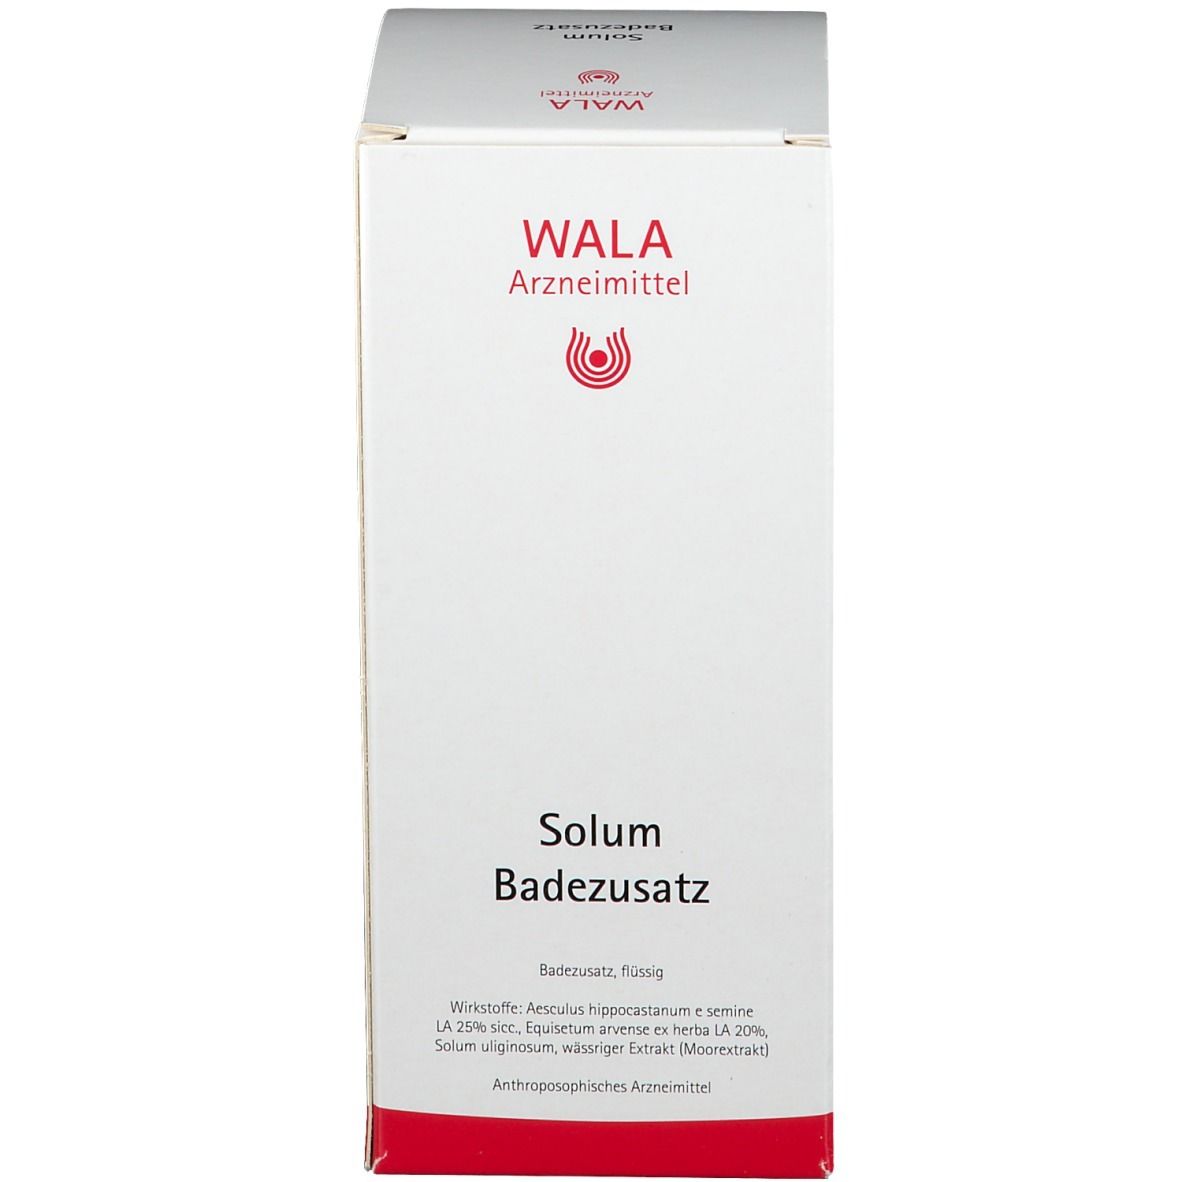 WALA® Solum Badezusatz